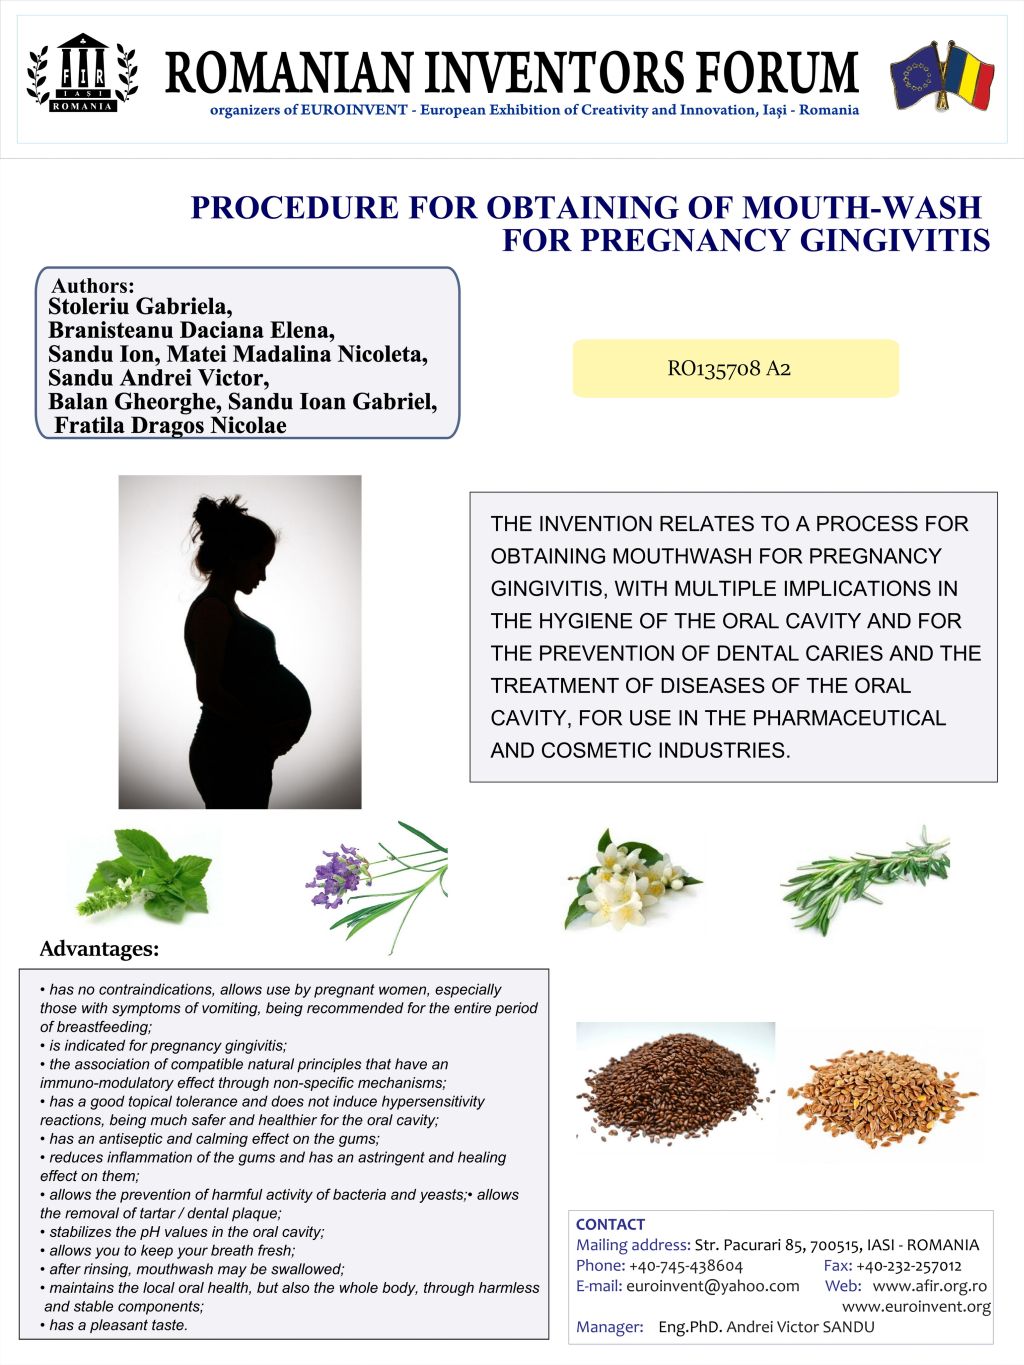 Postupak dobivanja tekućine za ispiranje usta kod gingivitisa u trudnoći